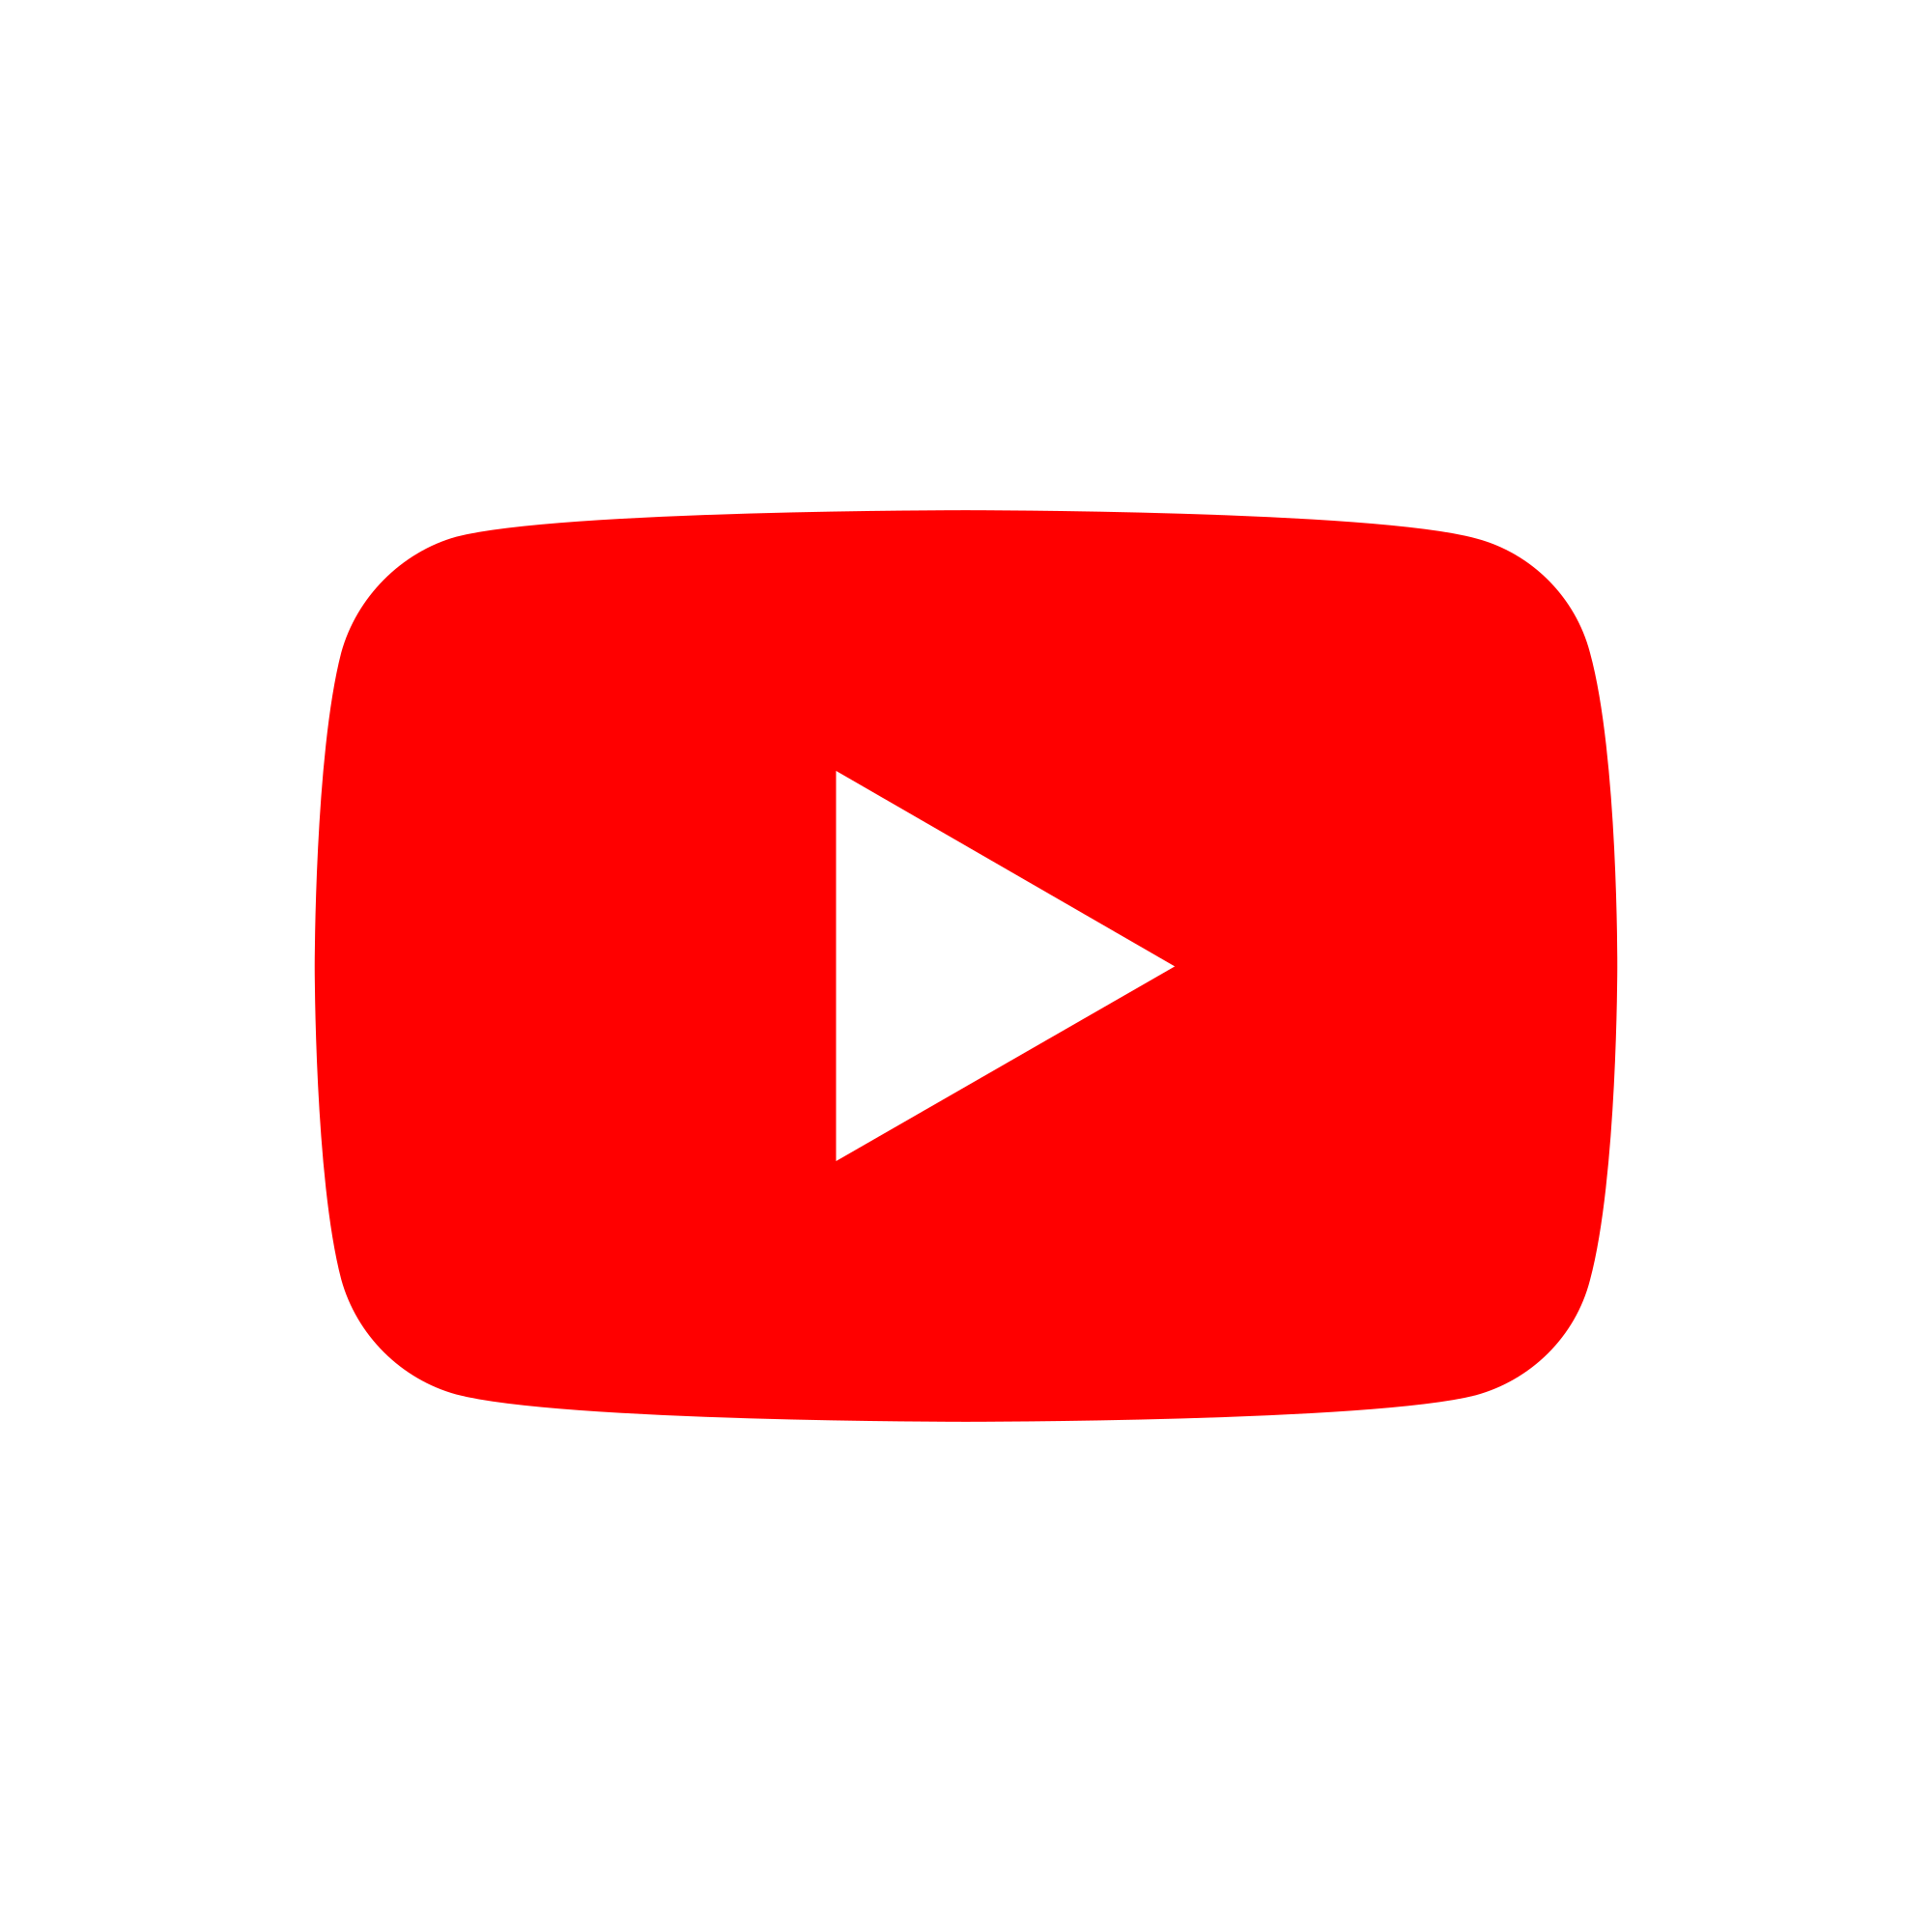 YouTube a supprimé plus de 80 millions de vidéos et 7 milliards de commentaires depuis 2018